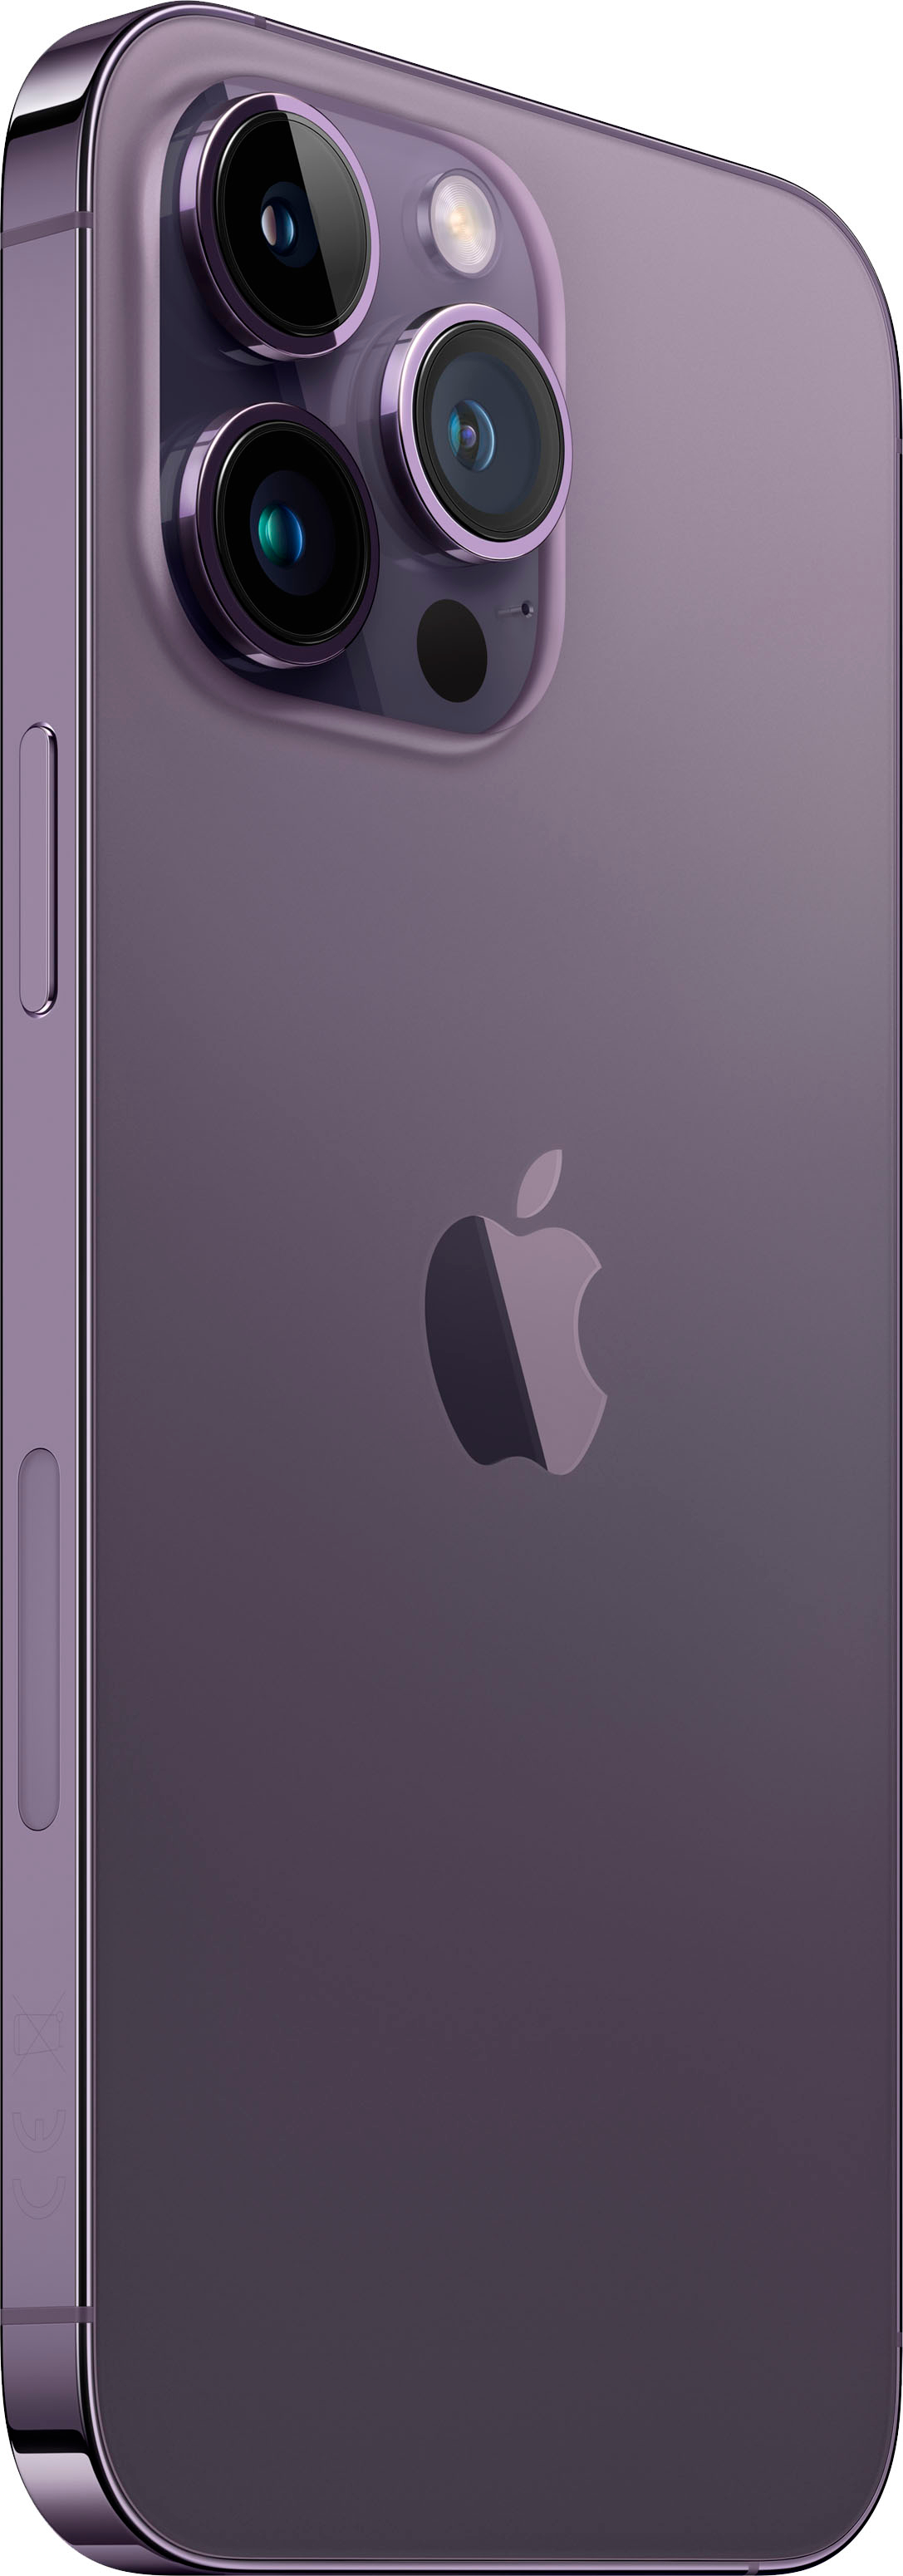 Apple iPhone 14 Pro Max 256GB Deep Purple (AT&T) MQ8W3LL/A - Best Buy